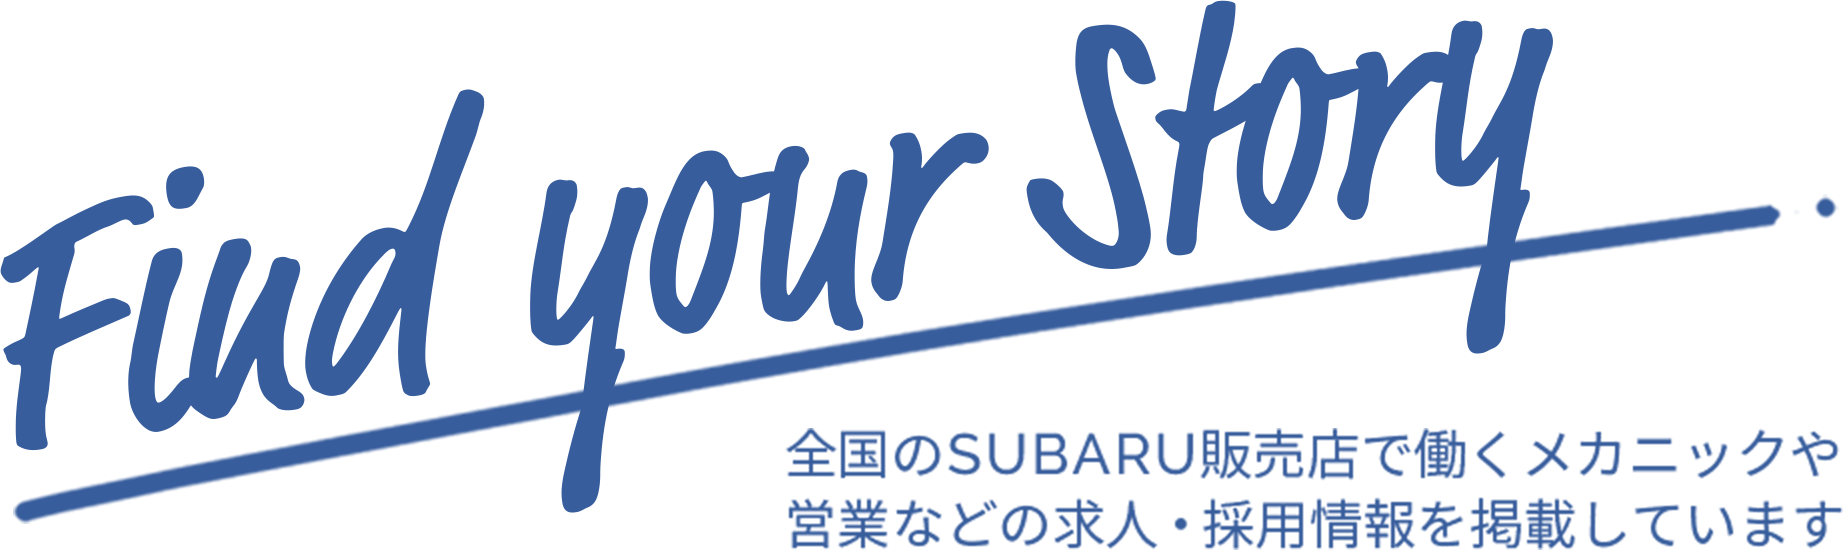 Find your Story 全国のSUBARU販売店で働くメカニックや営業などの求人・採用情報を掲載しています